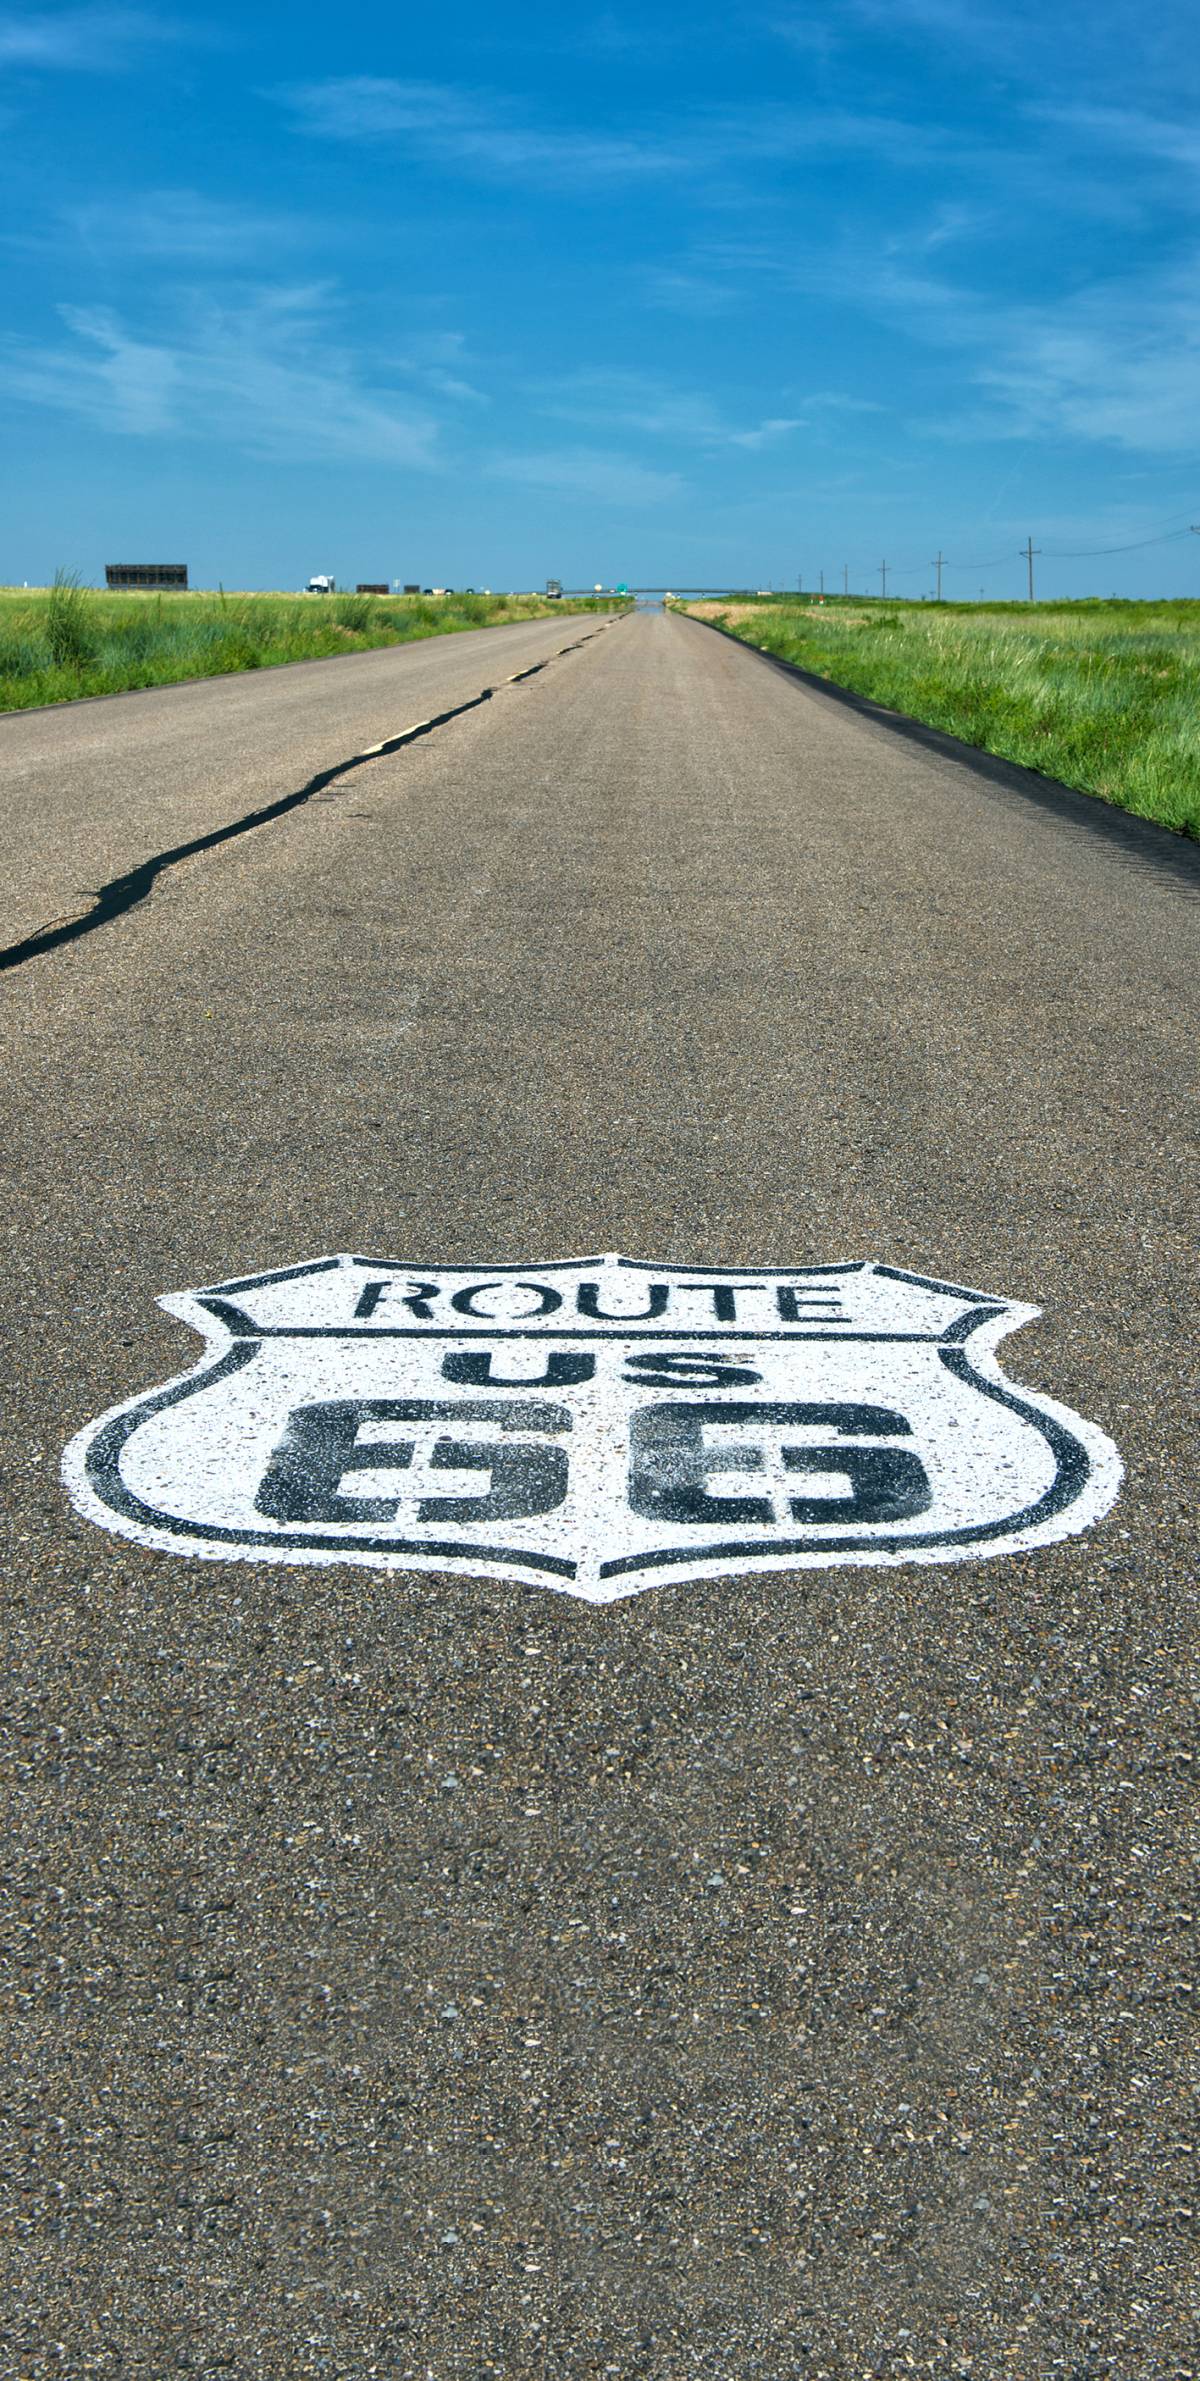 La strada del mito all'ultimo miglio. La corsa negli Usa per salvare "Route66"